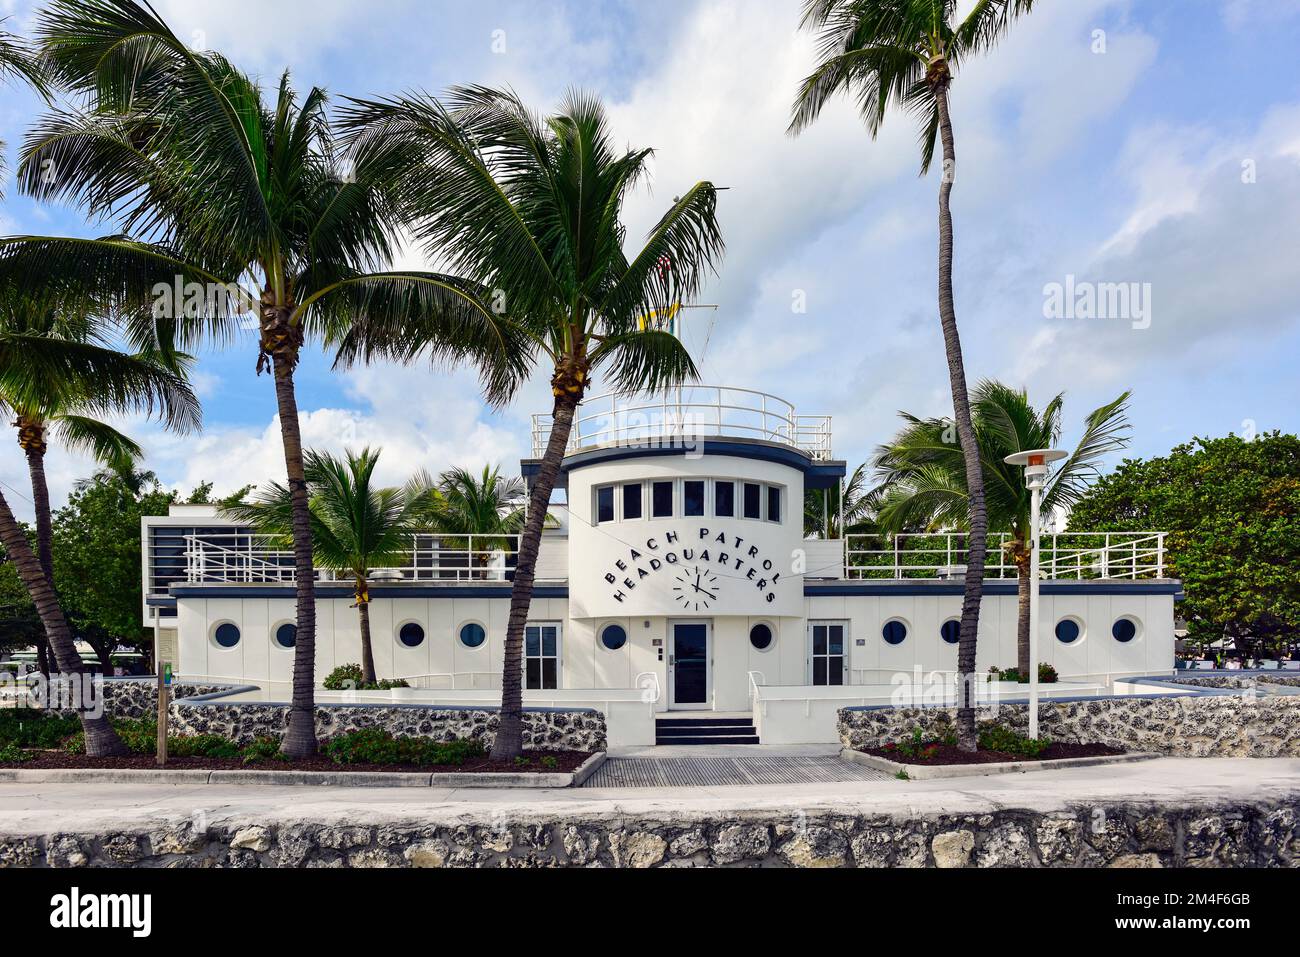 Le quartier général de Beach Patrol dans le quartier historique art déco de South Beach, Miami, Floride. Banque D'Images